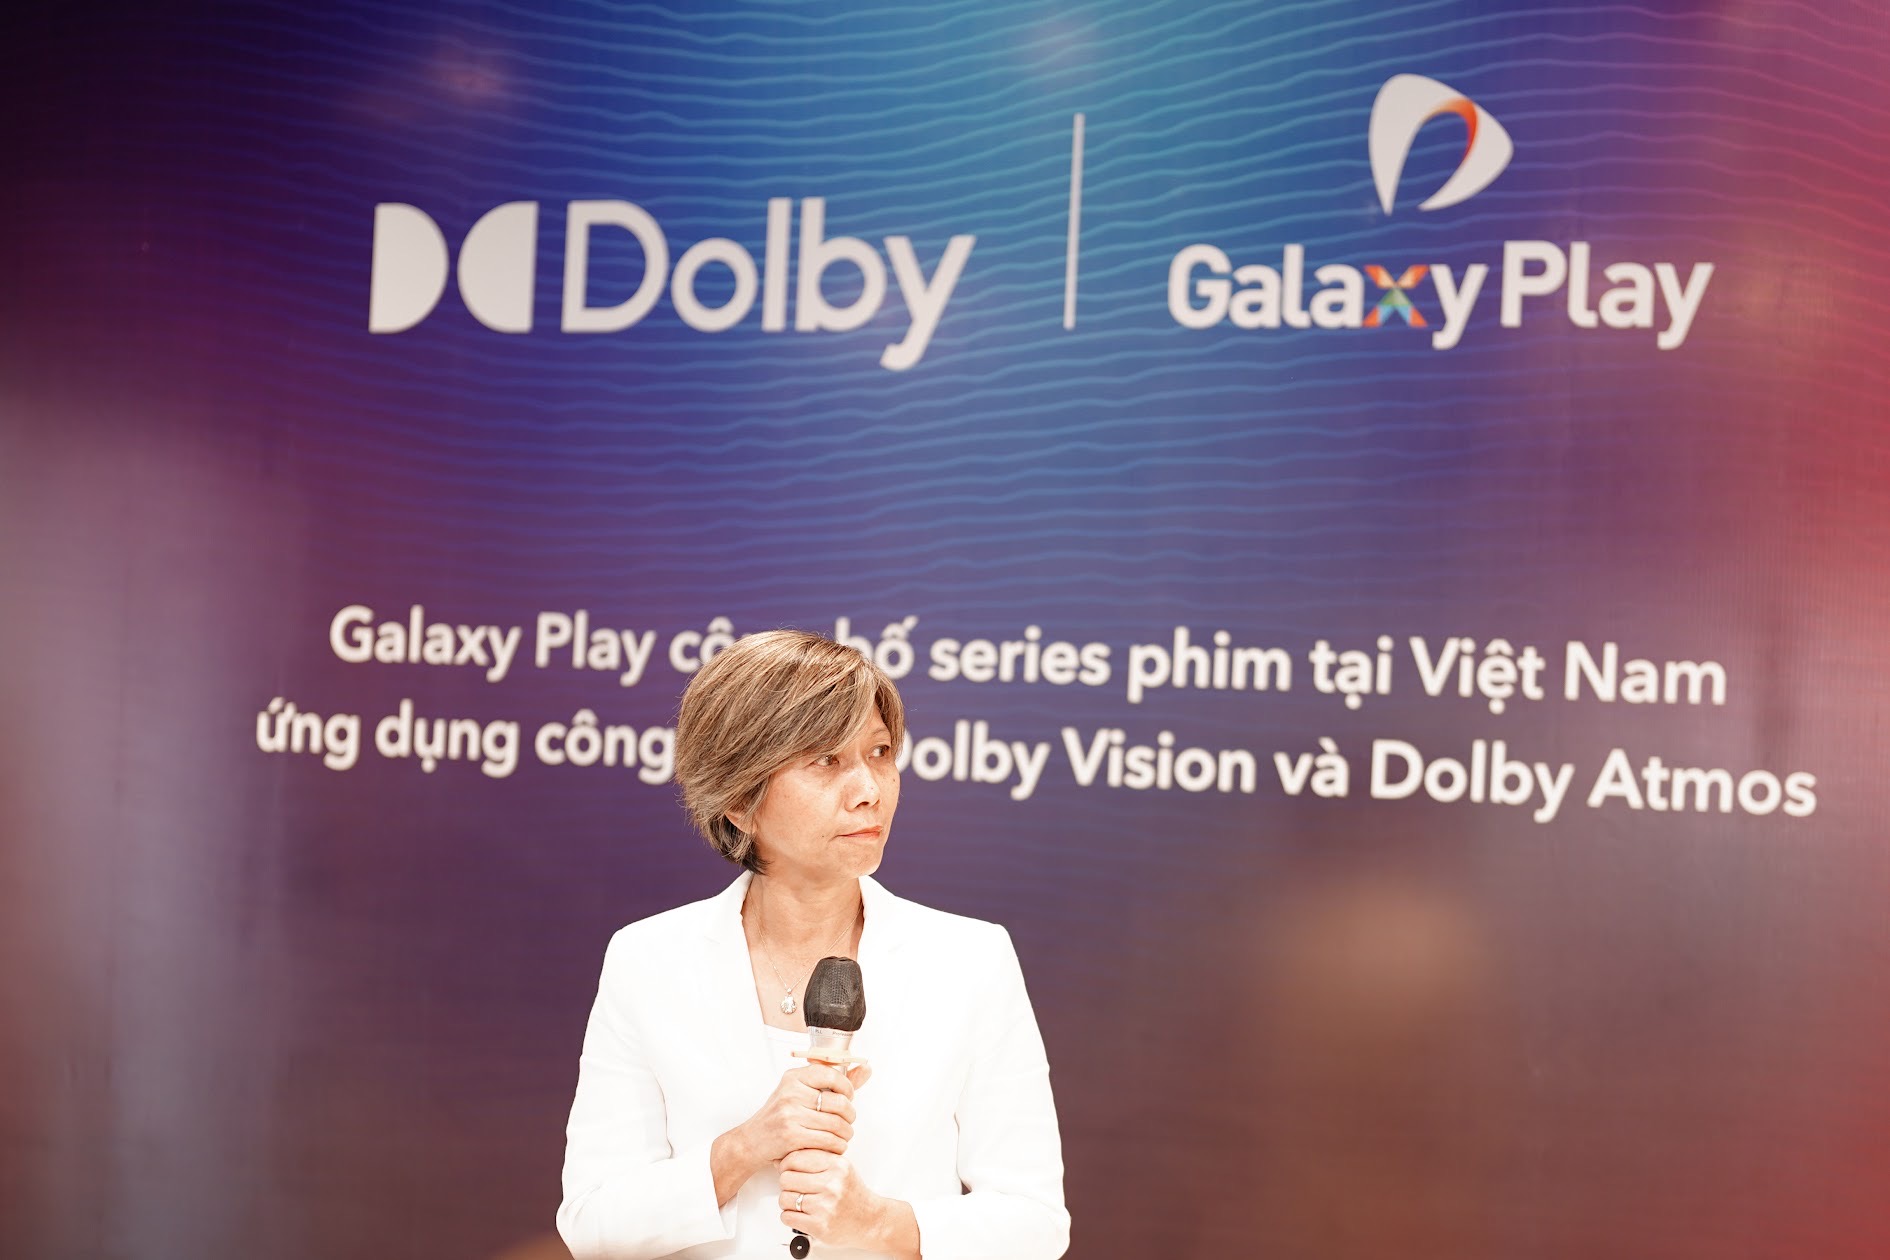 Mãn nhãn, đã tai với công nghệ Dolby trong series phim Việt đang gây sốt màn ảnh  - Ảnh 2.